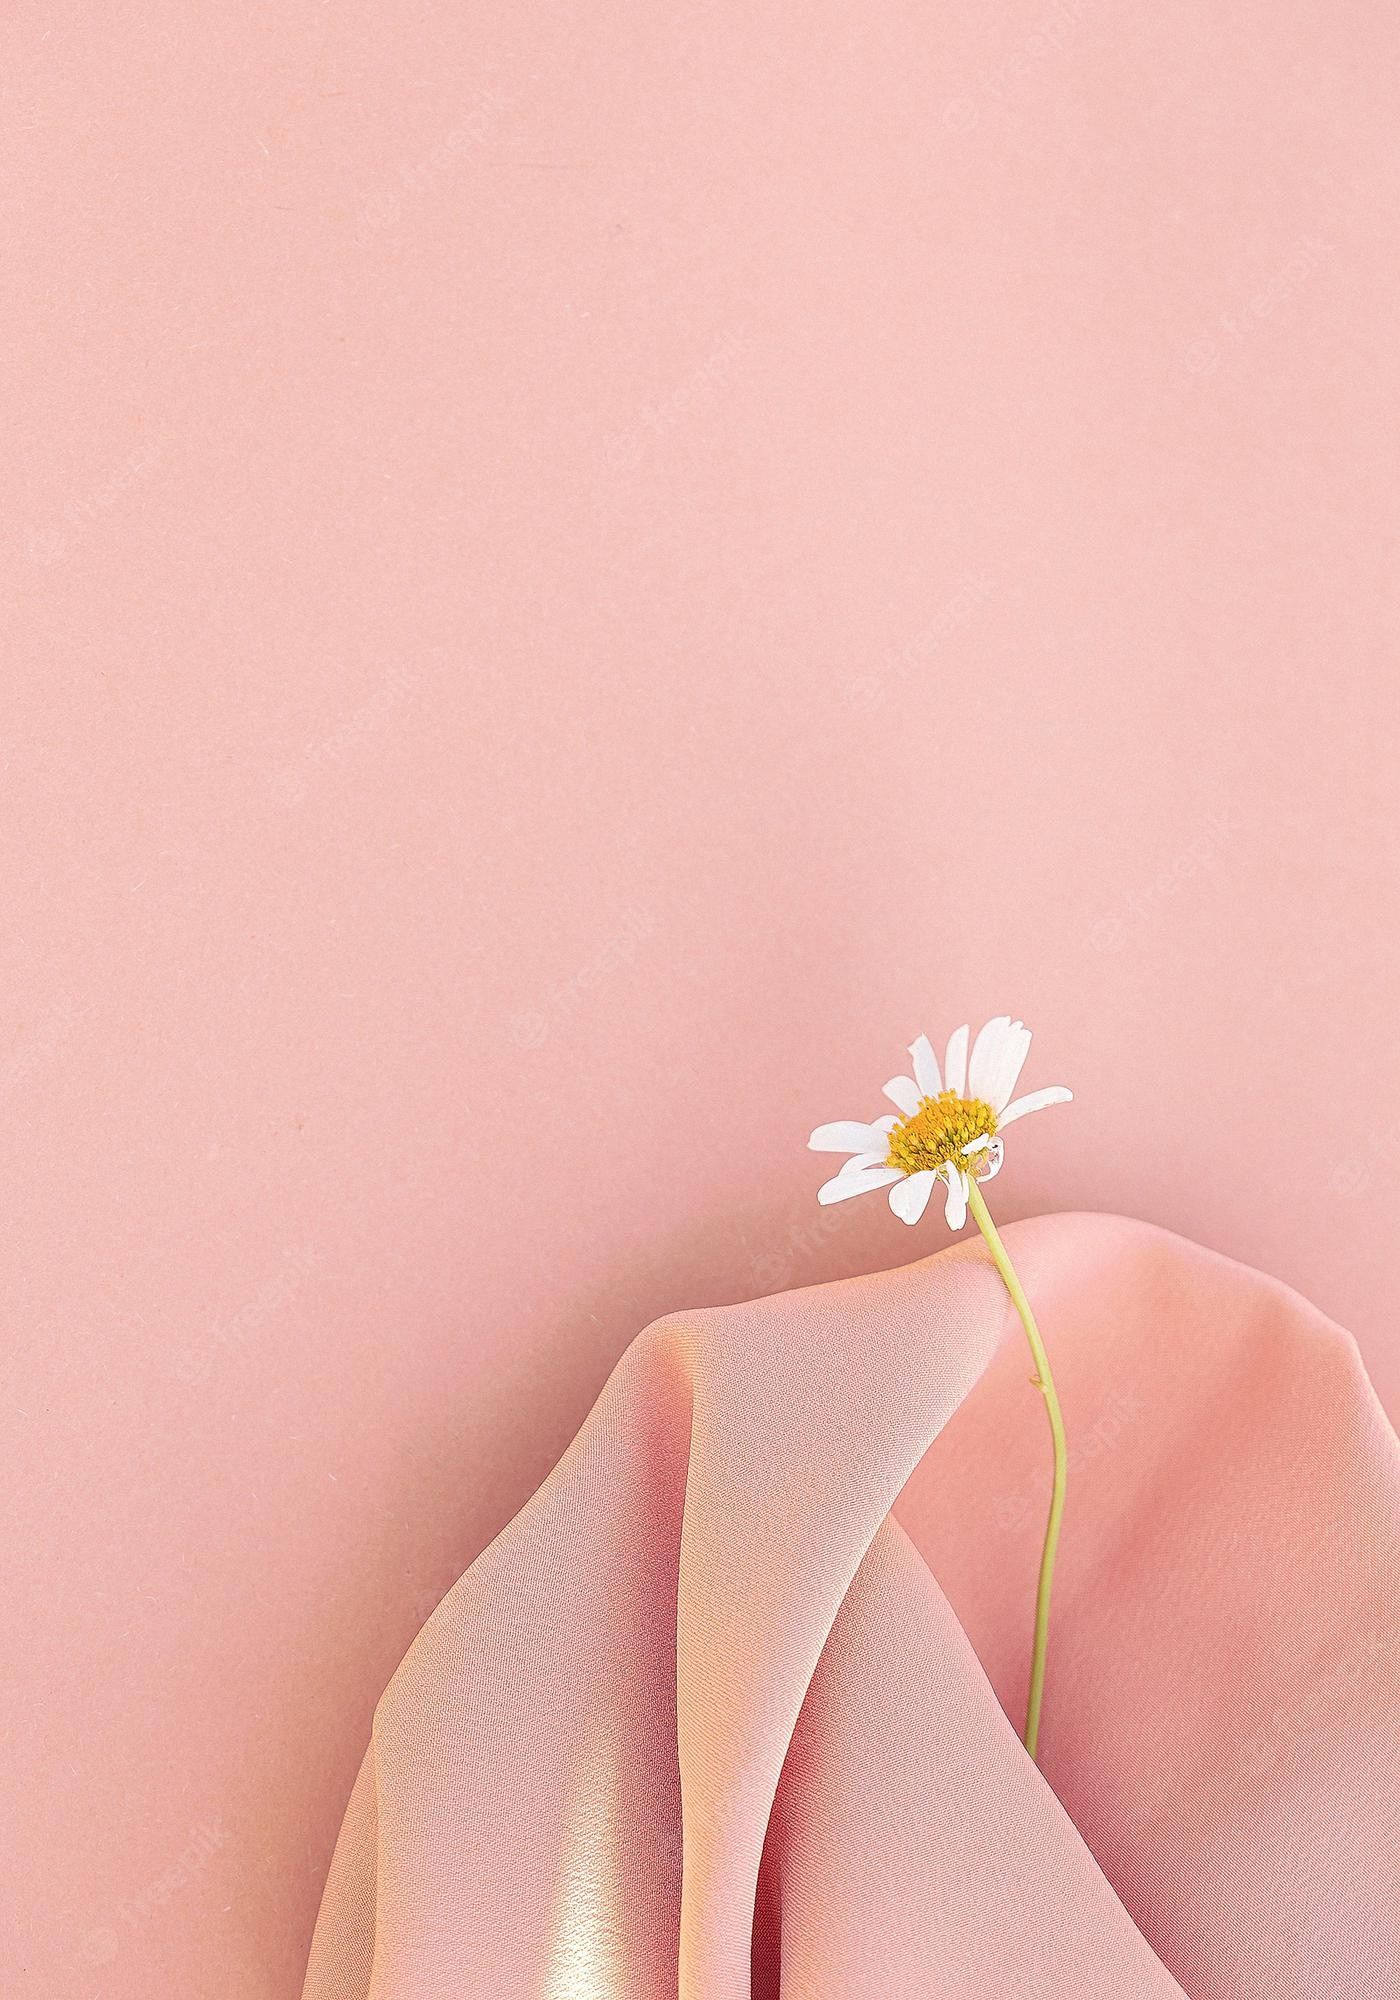 Wallpaper Pastel Pink Aesthetic Image